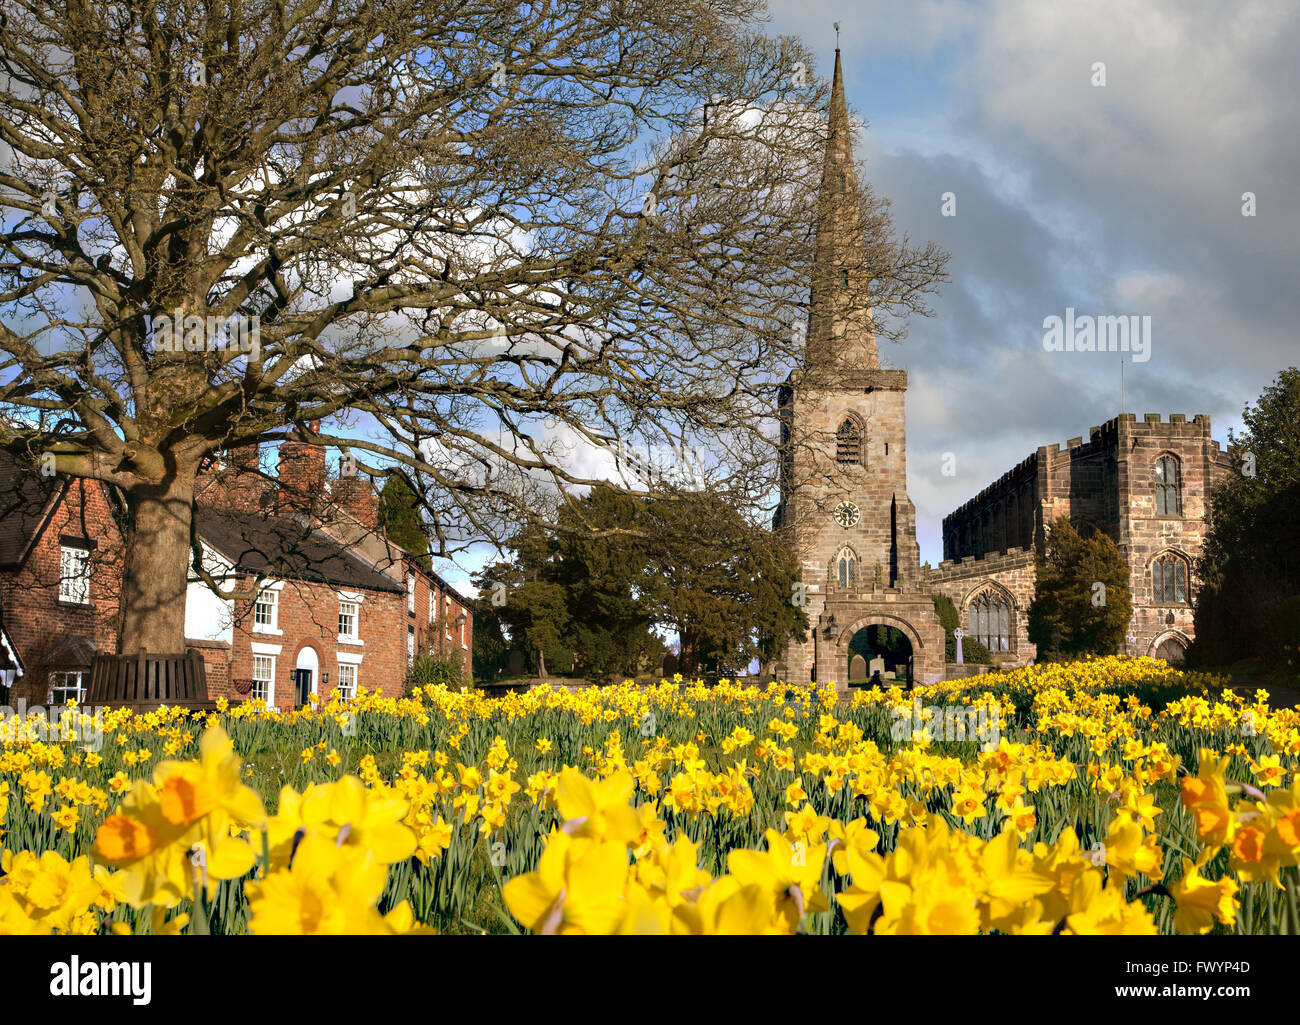 Église paroissiale de St Mary à Astbury près de Congleton Cheshire Angleterre debout sur le village vert et jonquilles en fleur dedans printemps Banque D'Images